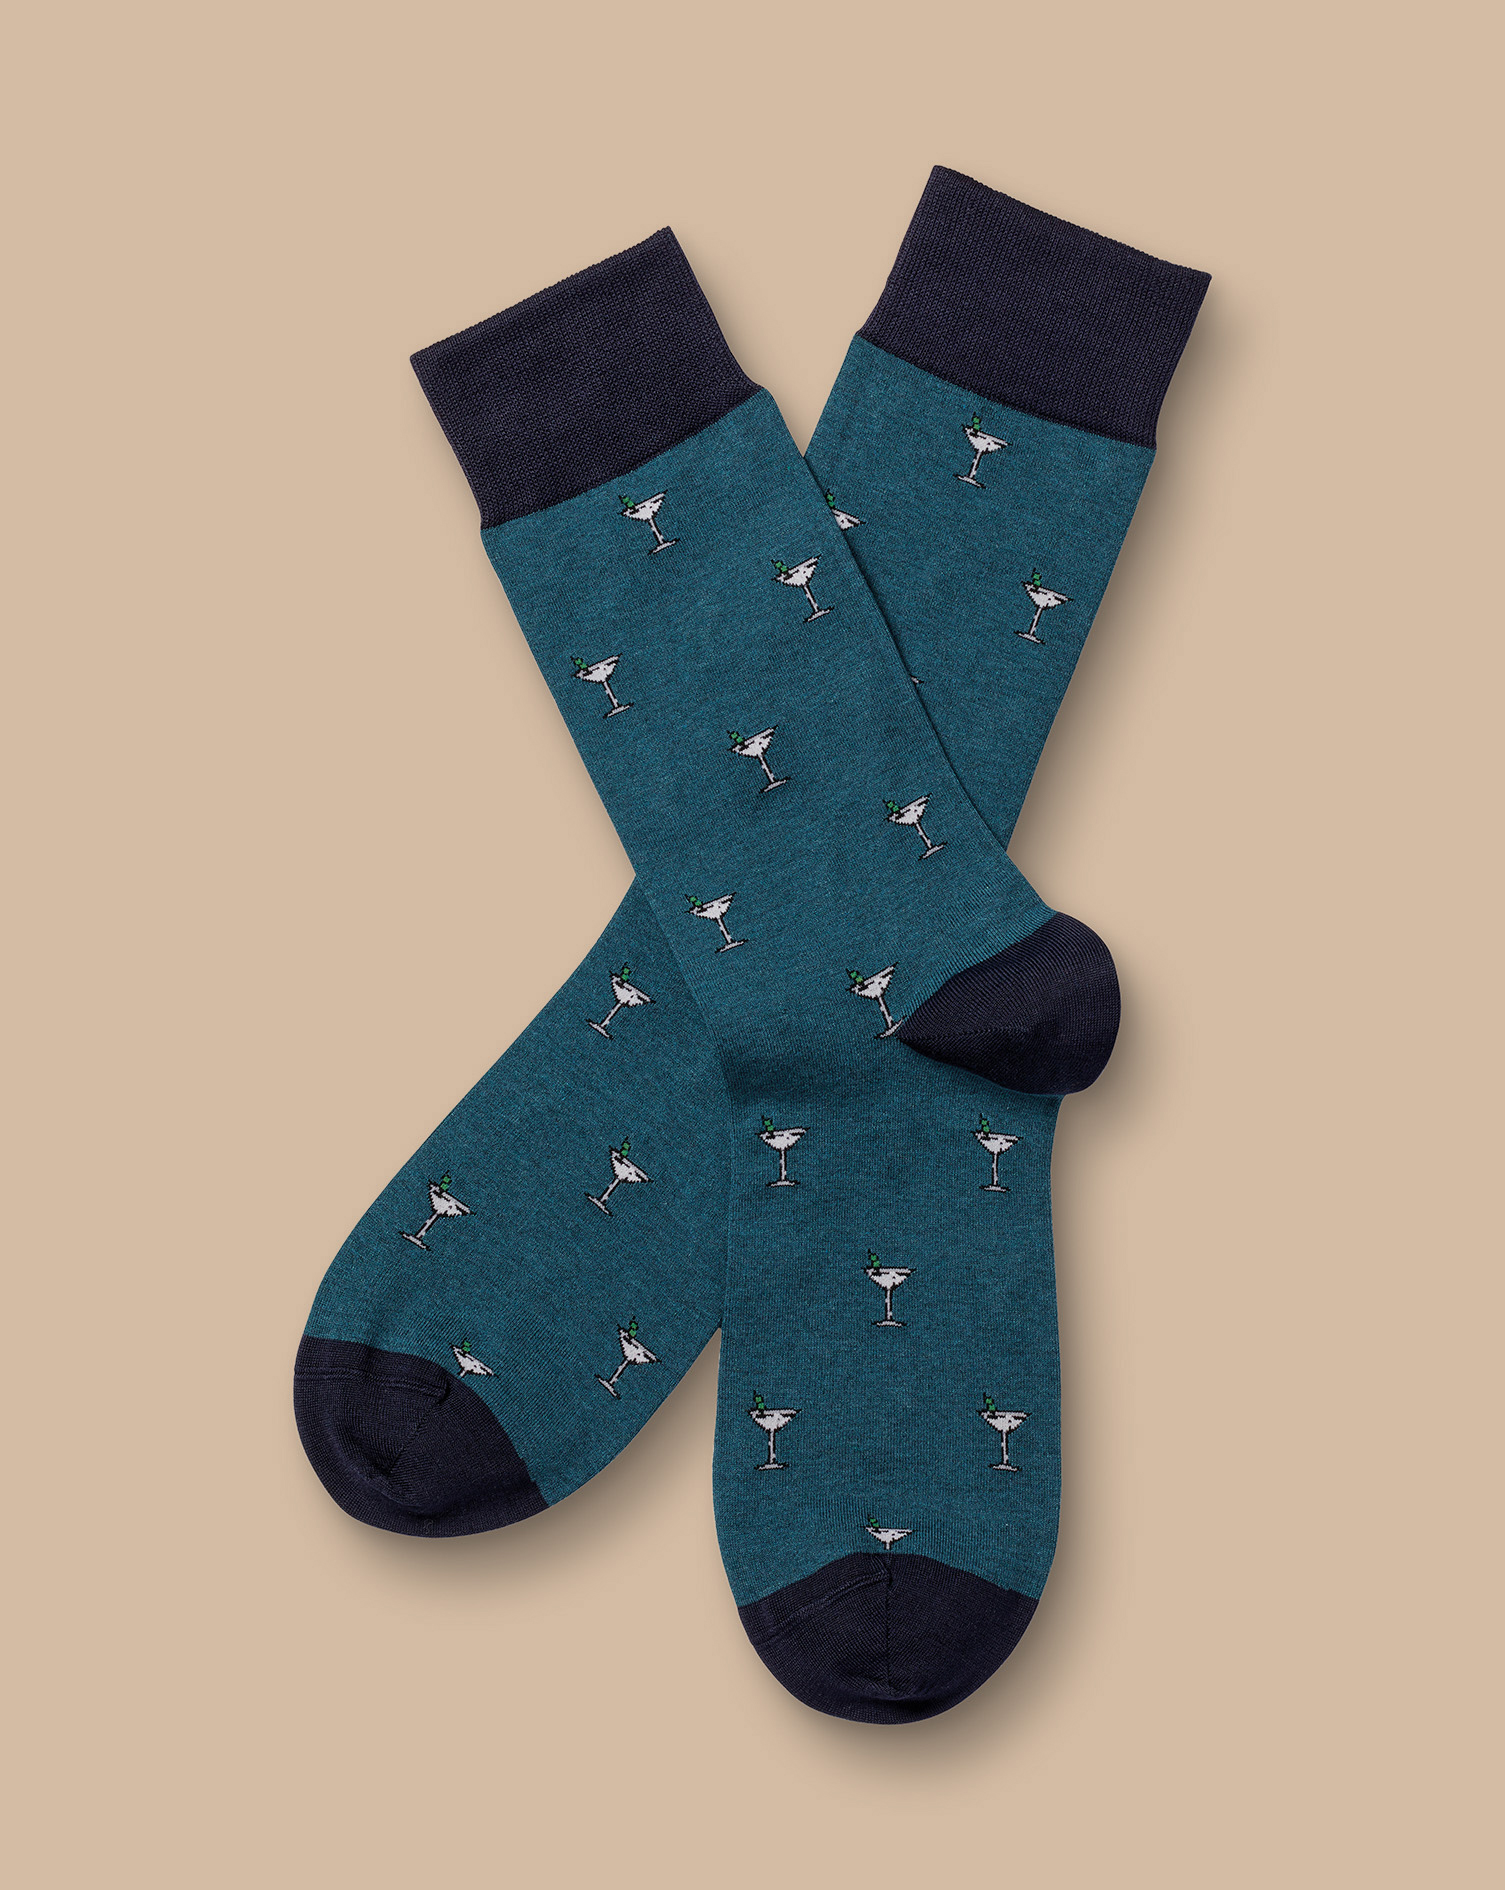 Men's Charles Tyrwhitt Martini Socks - Atlantic Green Melange Size 10.5-13 Cotton
